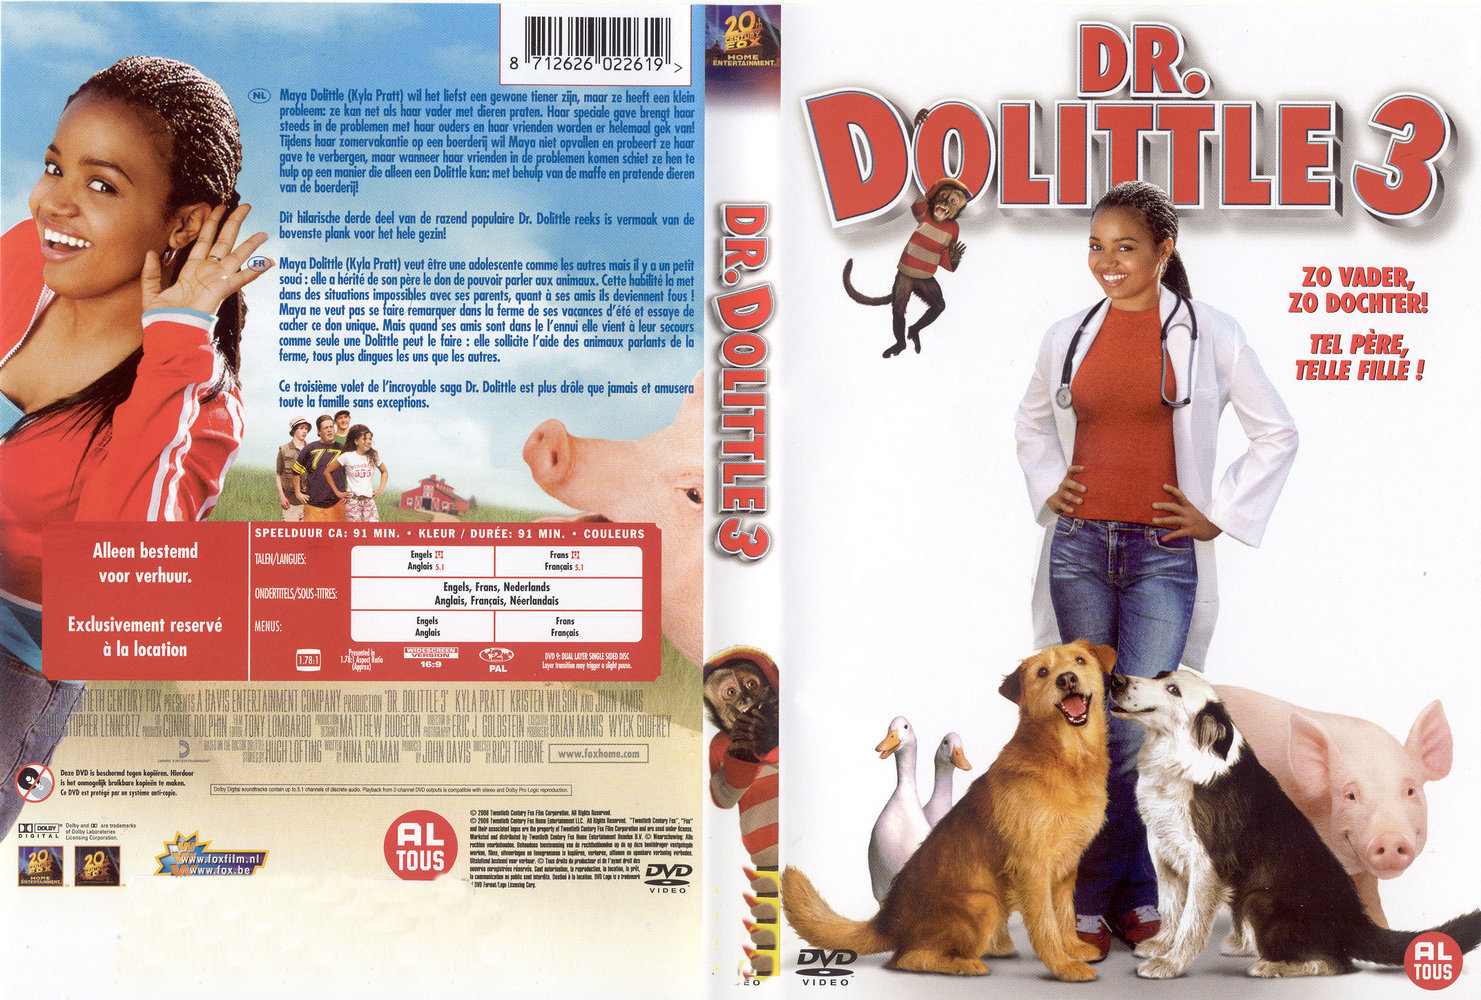 Dr Dolittle 3